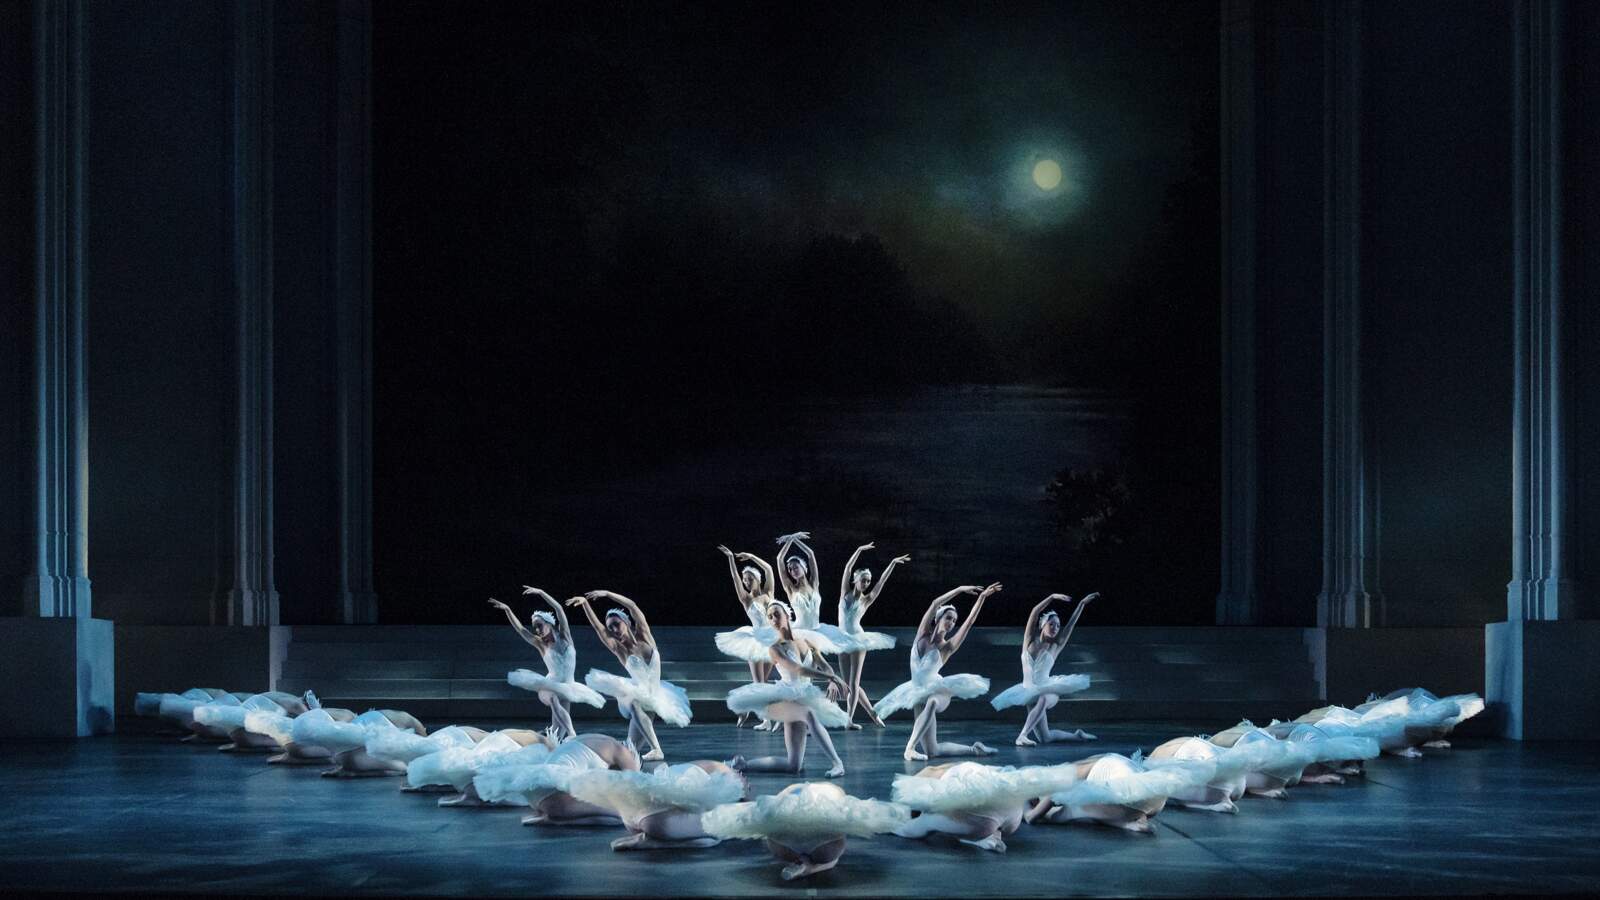 En grupp vitklädda ballerinor dansar synkroniserat på en mörk scen som svanar på en sjö. En fullmåne lyser bakom dem.